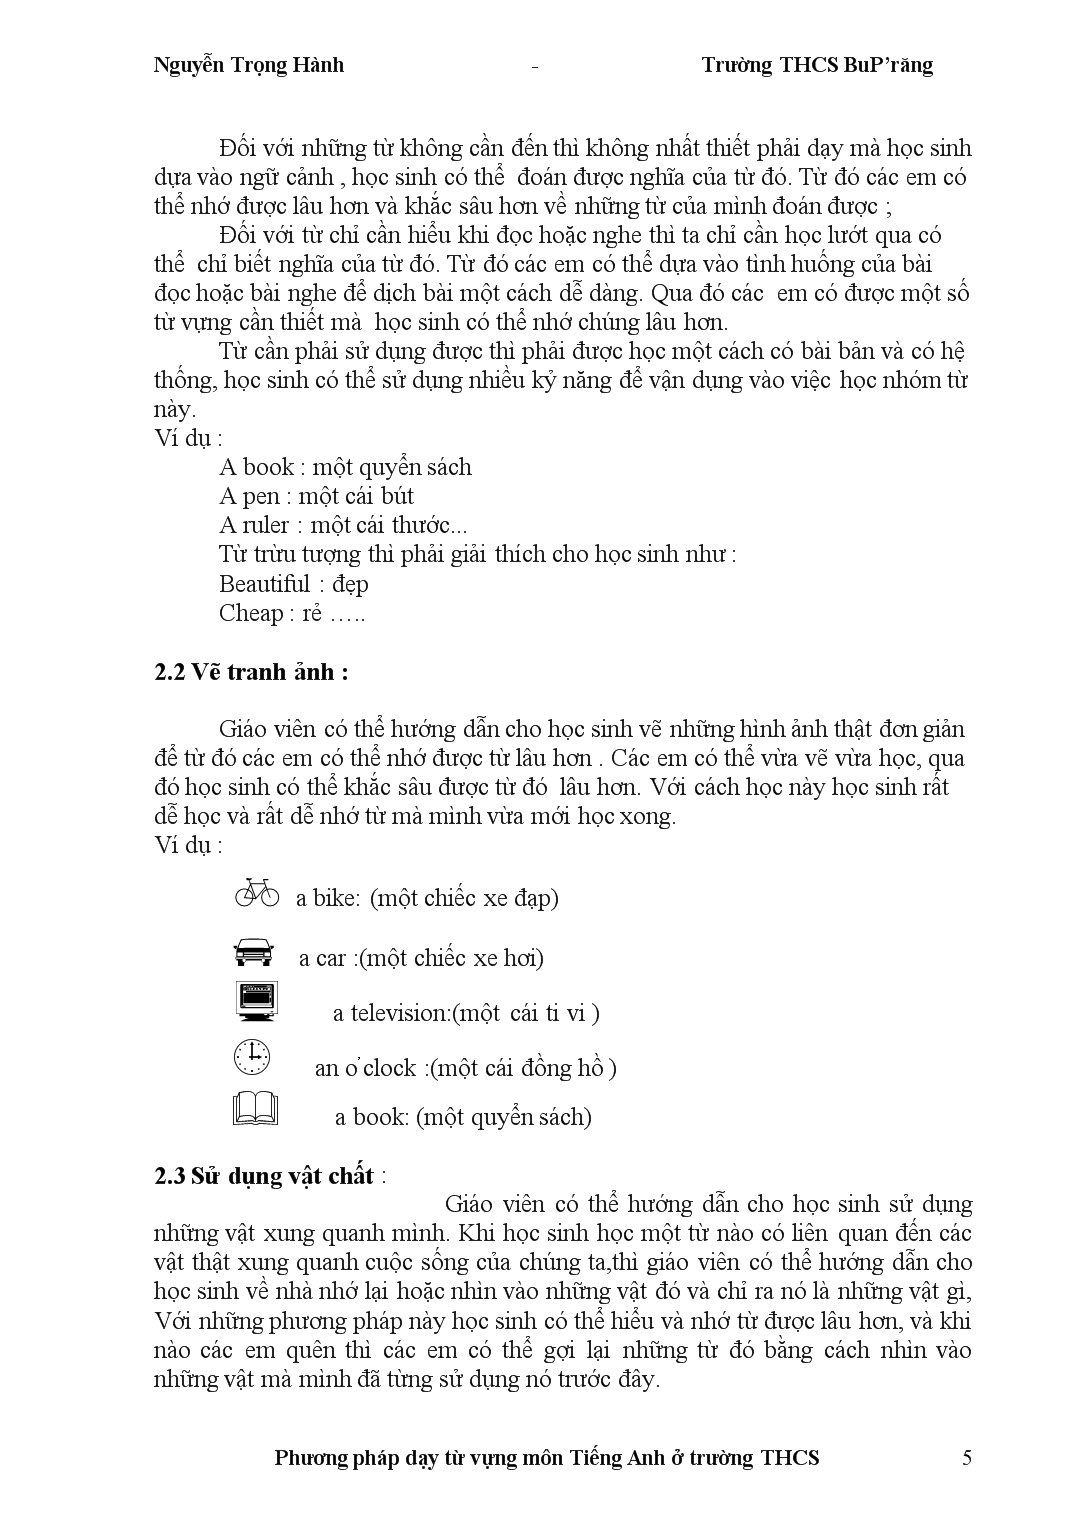 Đề tài Phương pháp dạy từ vựng môn Tiếng Anh trong trường THCS trang 5